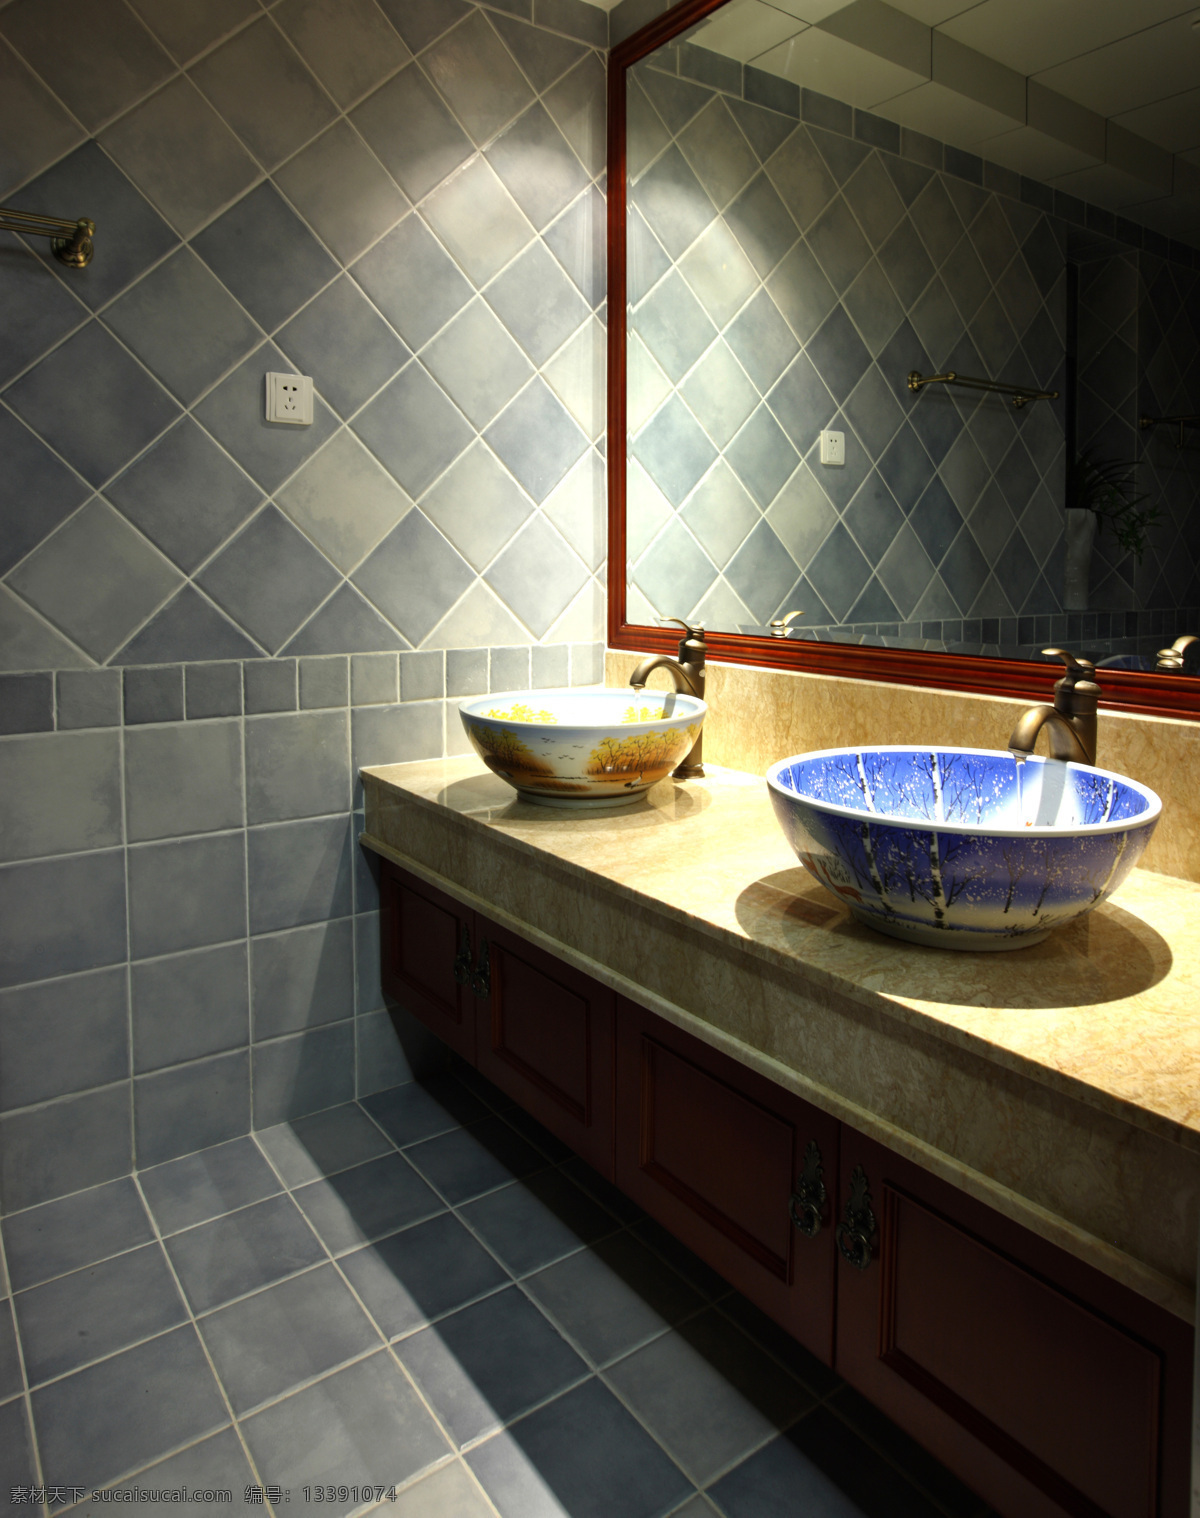 高端 卫浴 效果图 3d贴图 高端卫浴 高清 渲染 图 3d 装饰素材 室内设计